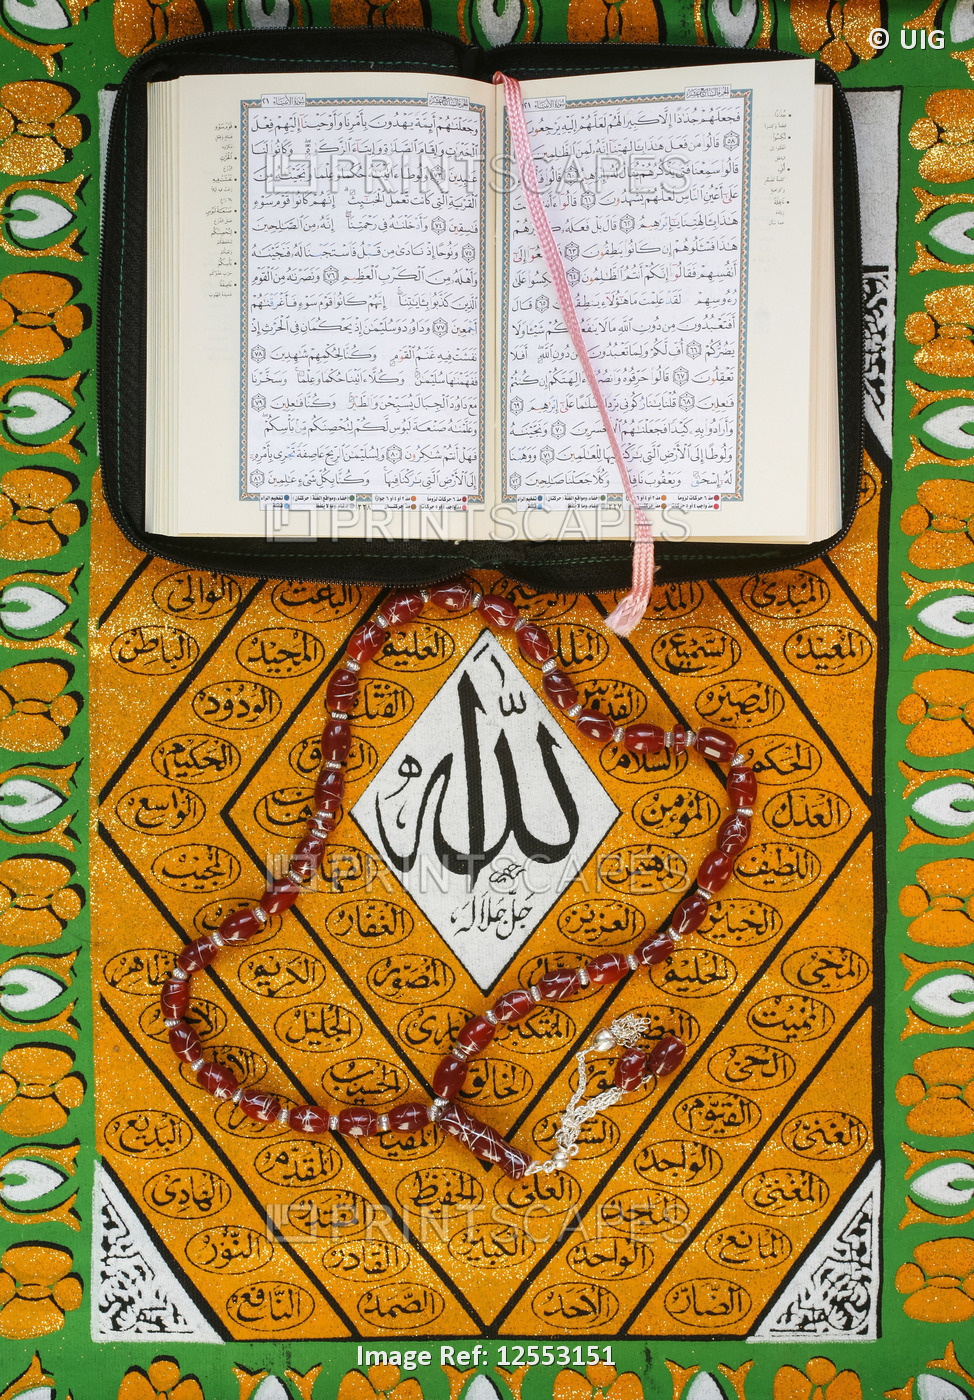 Koran, rosary and Allah calligraphy